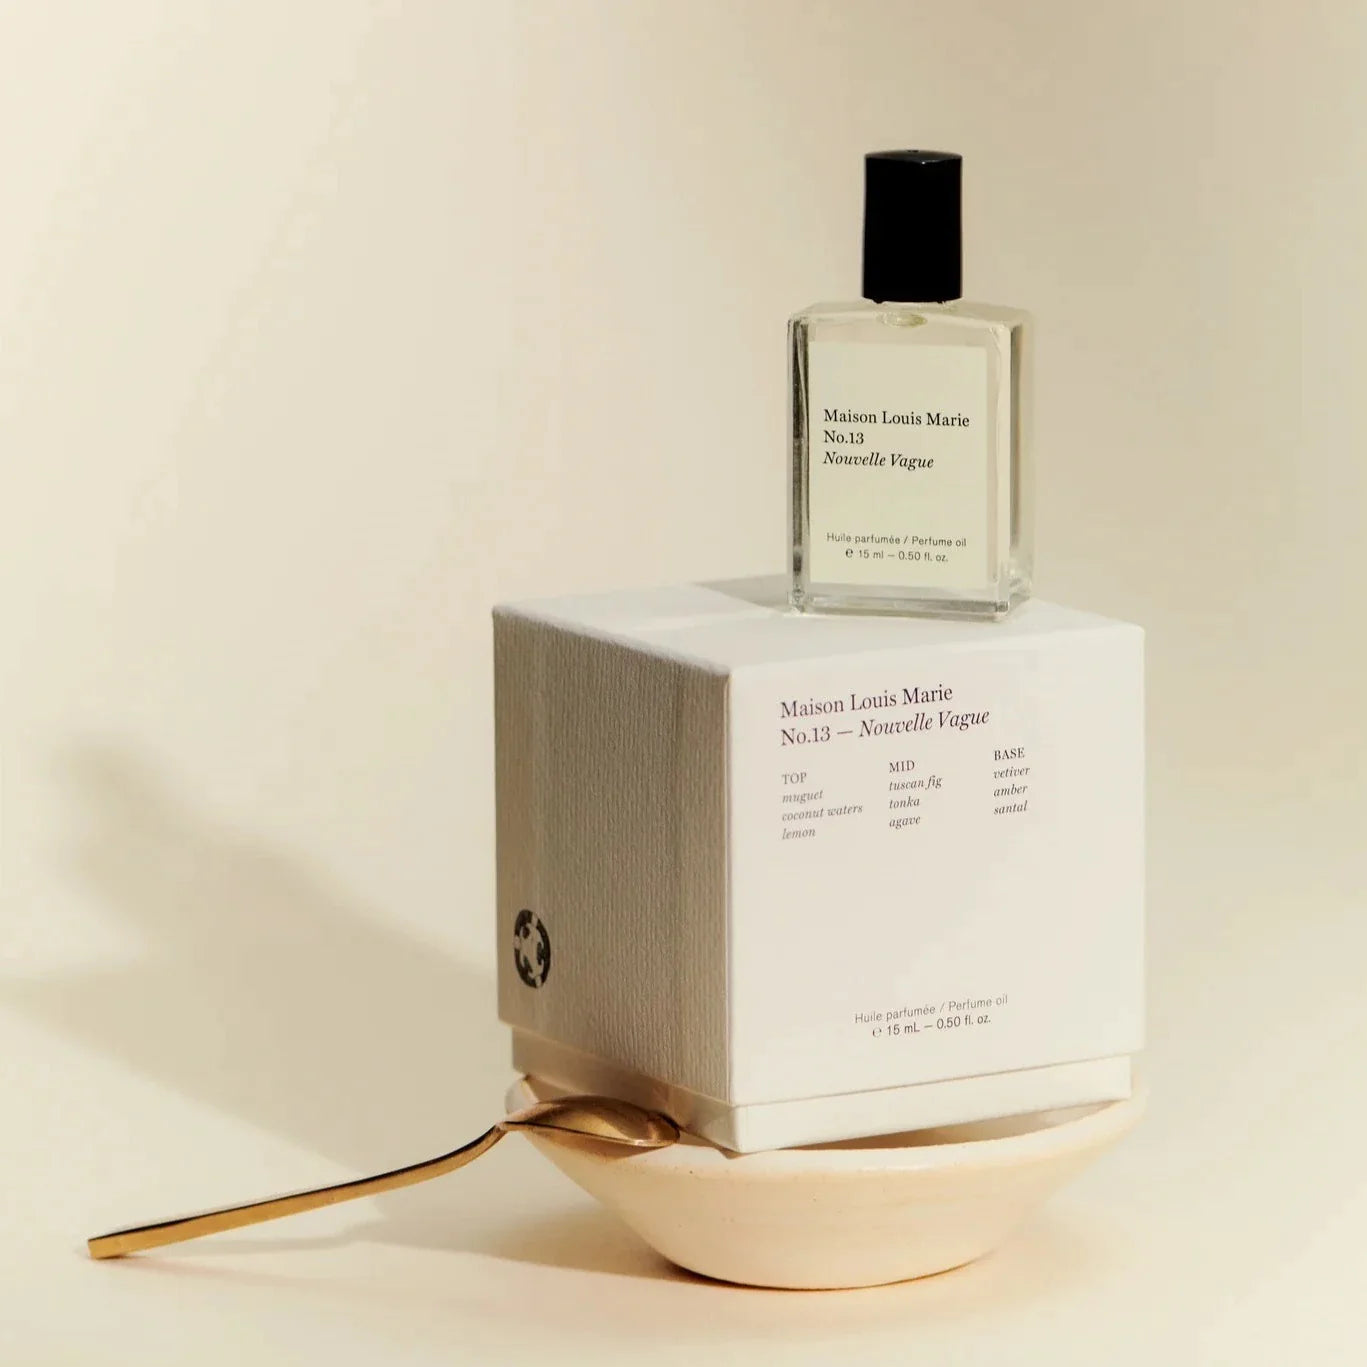 No. 13  - Nouvelle Vague Perfume Oil